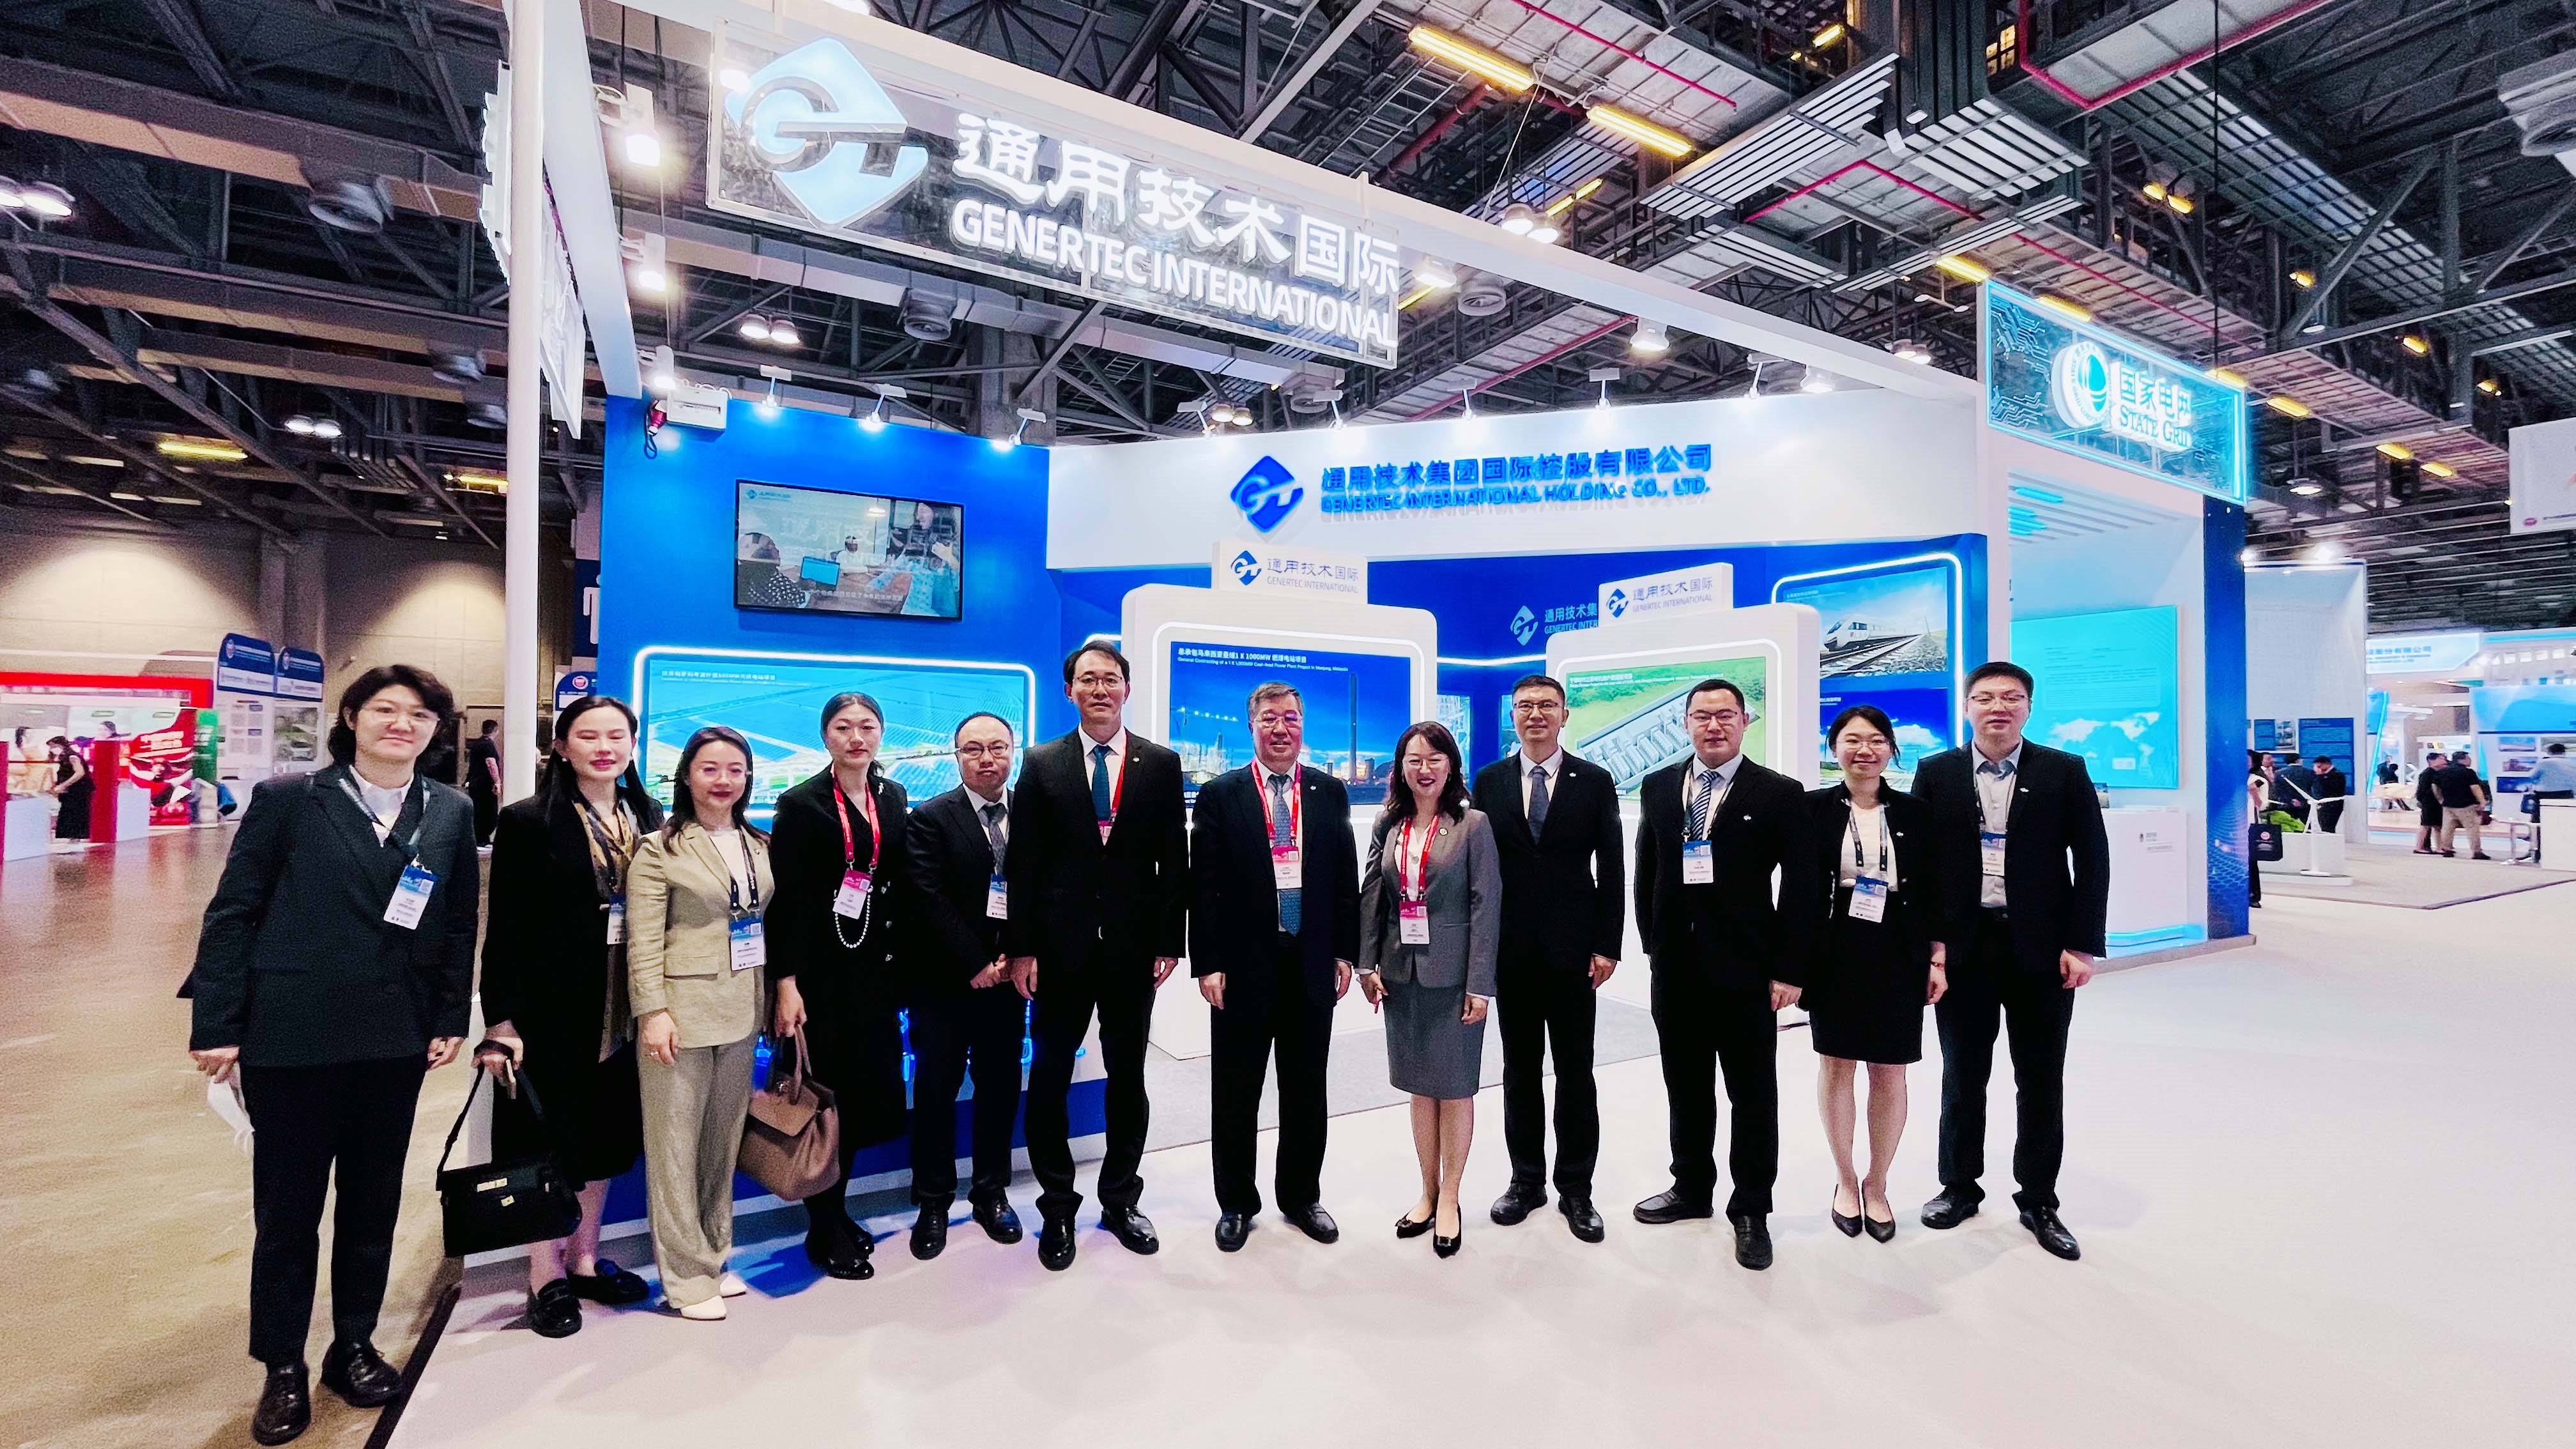 刘旭陪同集团、国际公司领导出席中国对外承包工程商会系列活动 